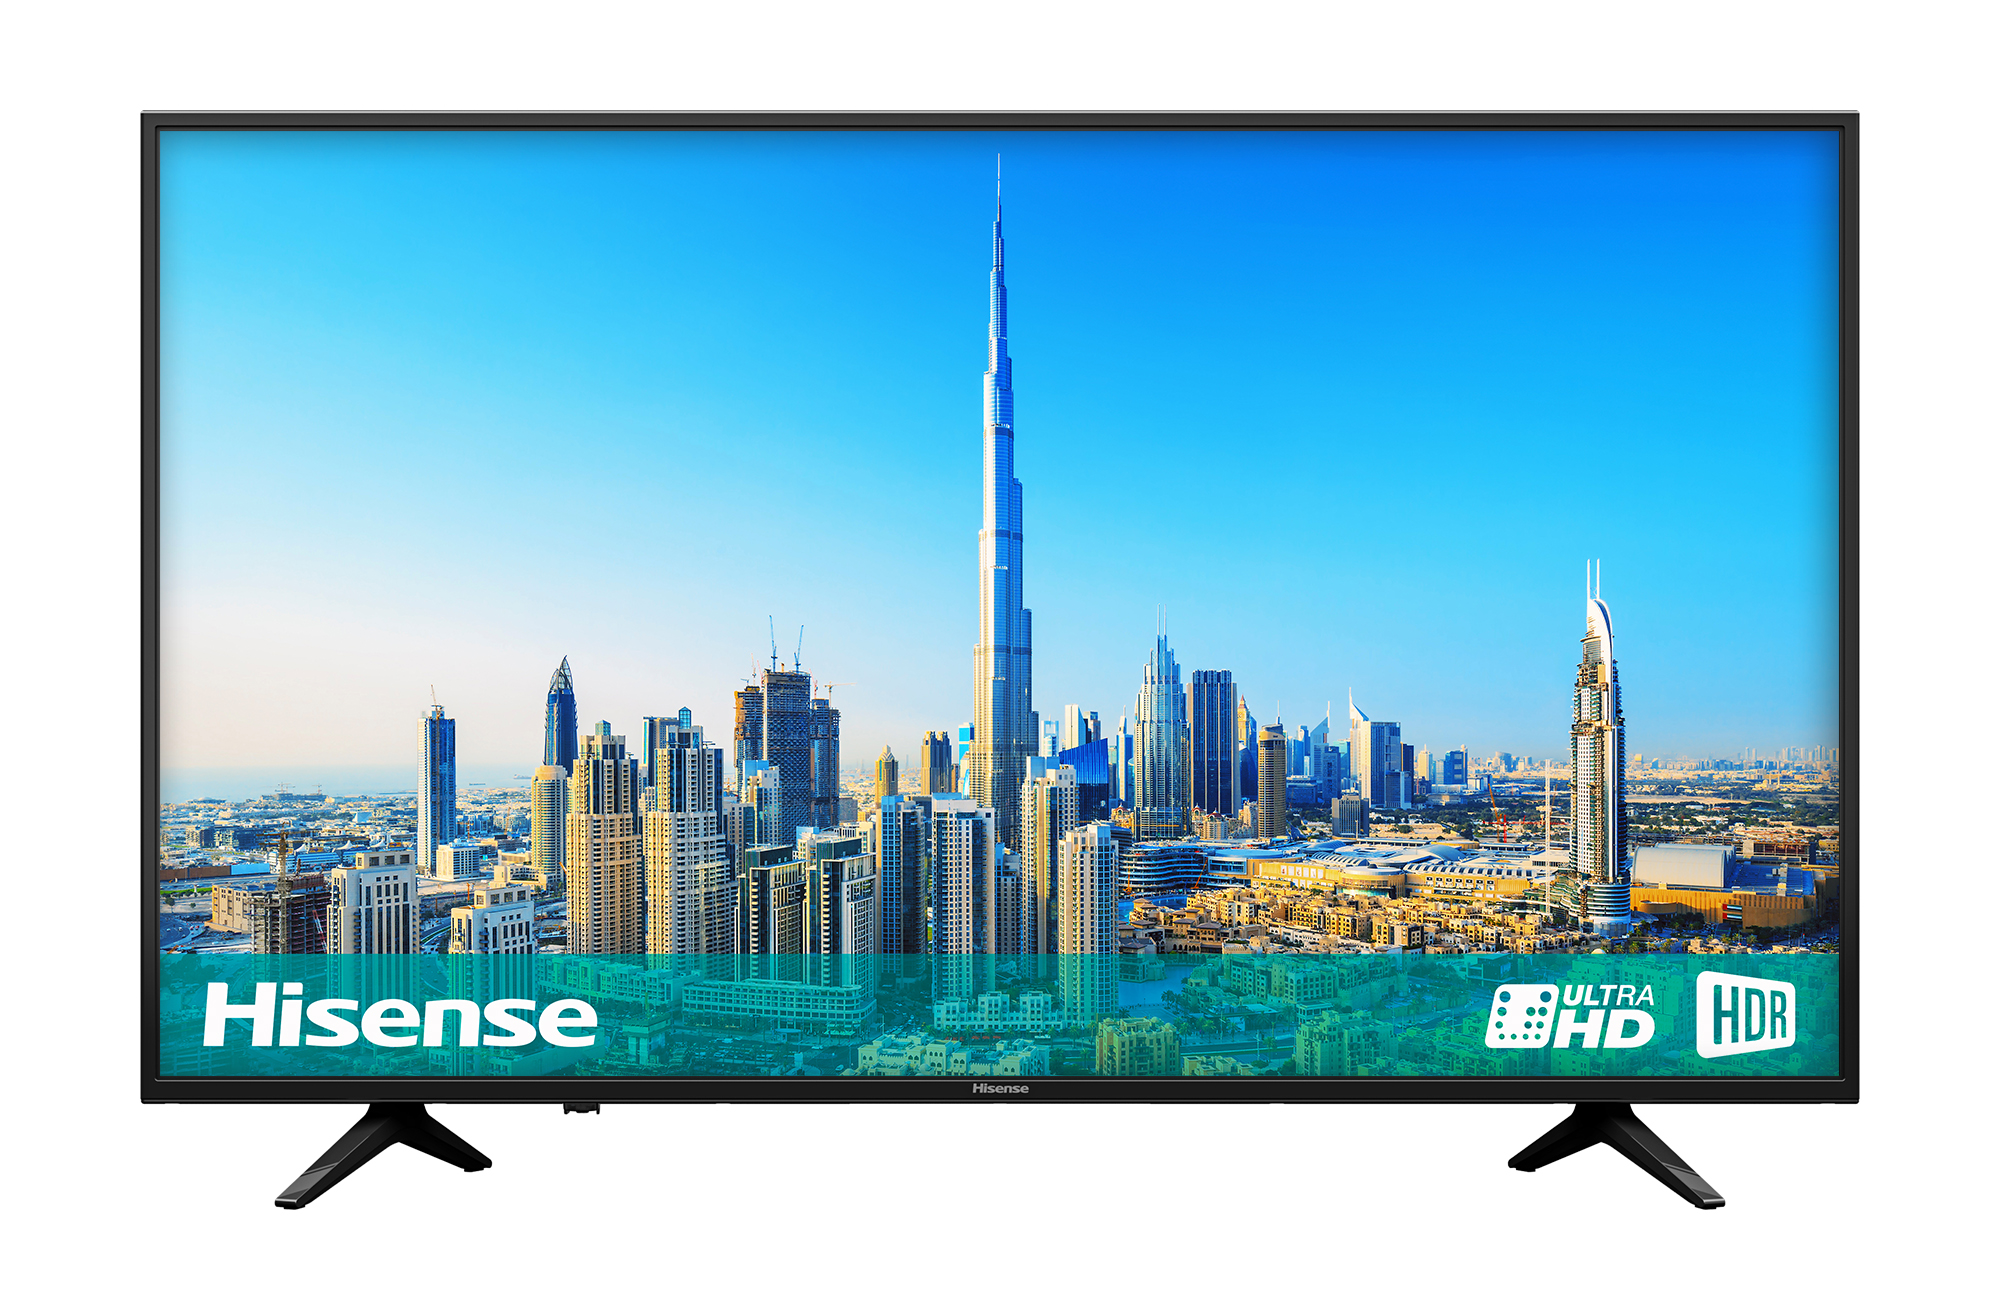 Hisense A6200 4K TV Review